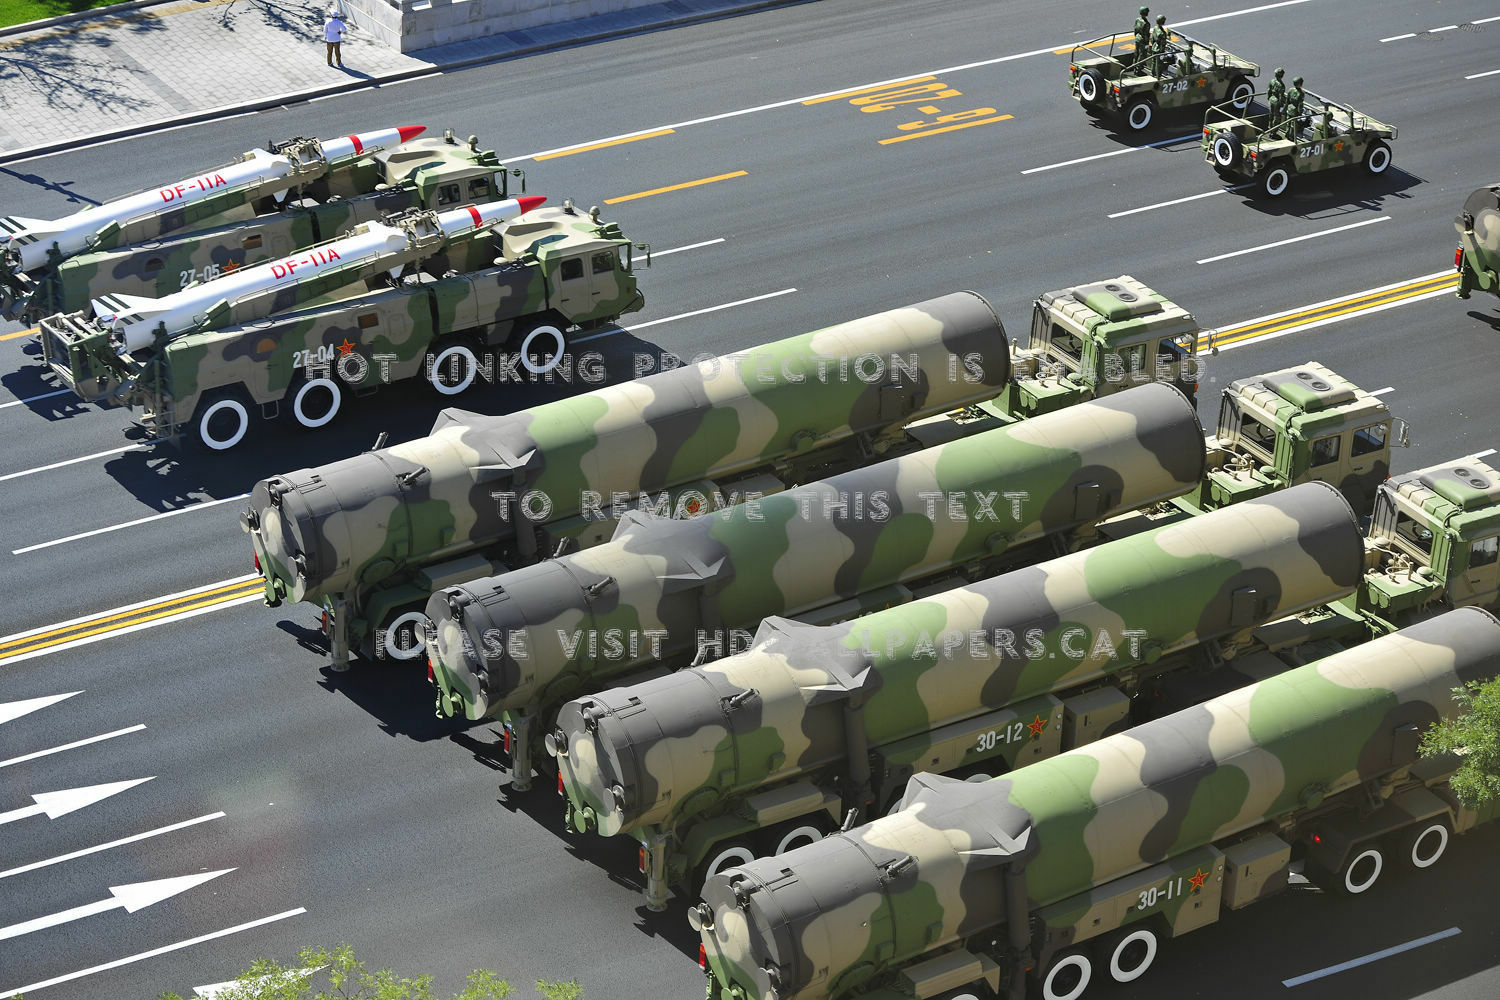 df31_icbm_china_parade_missile_aircraft_1600x1200_hd-wallpaper-251203.jpg